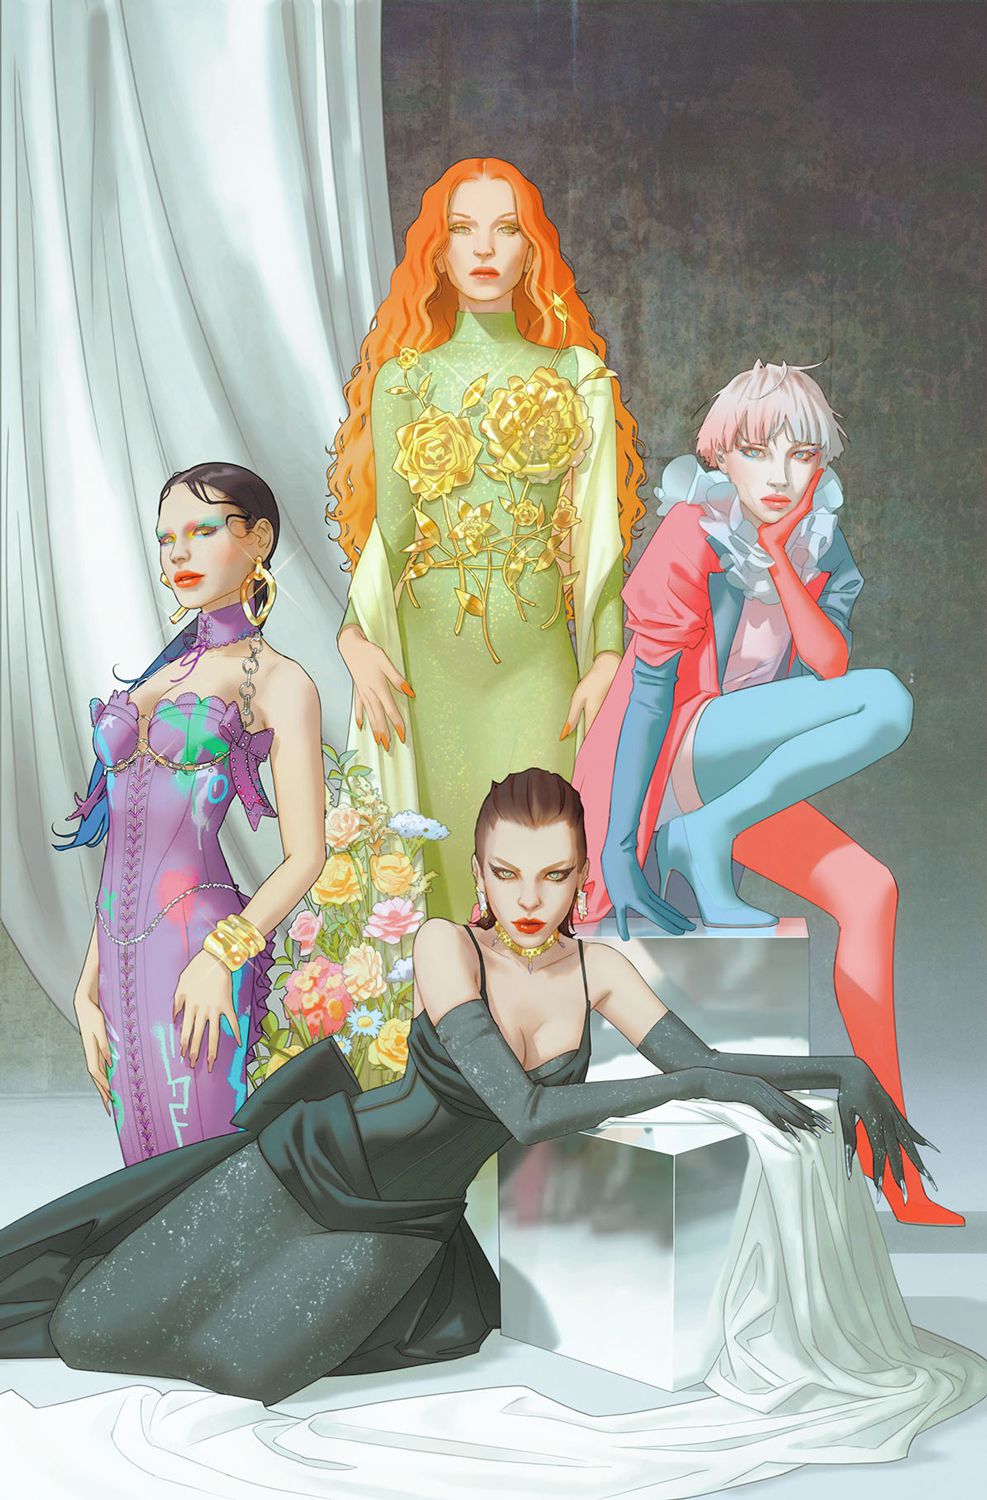 Punchline, Poison Ivy, Harley Quin et Catwoman posent dans une couture thématiquement appropriée sur une variante de couverture pour Gotham City Sirens.